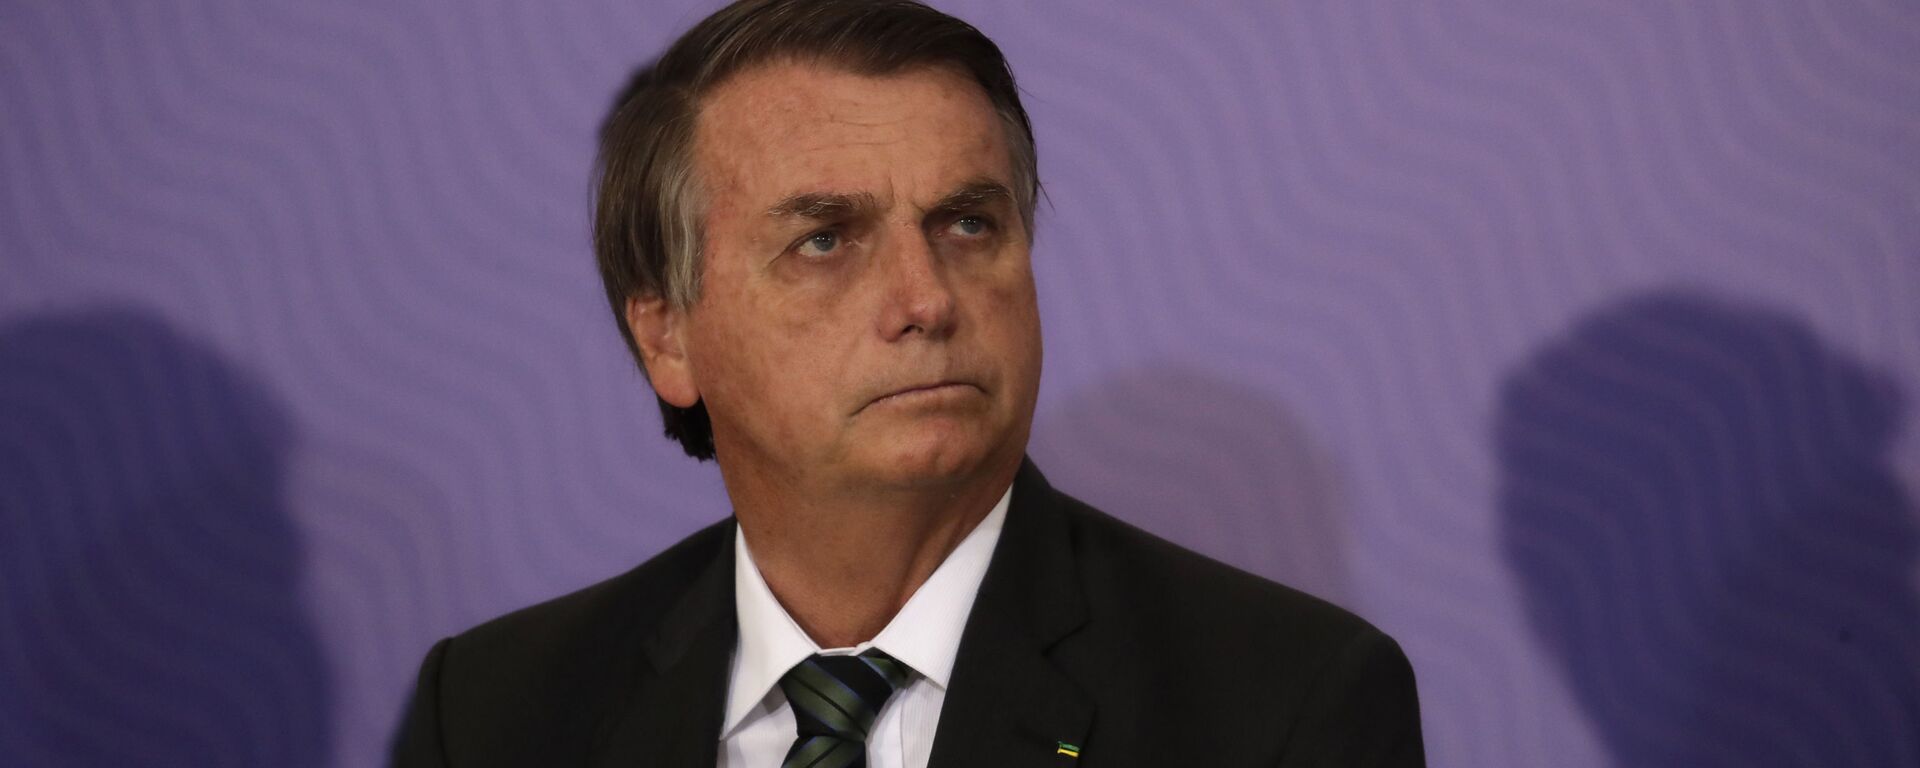 El presidente de Brasil, Jair Bolsonaro - Sputnik Mundo, 1920, 24.01.2021